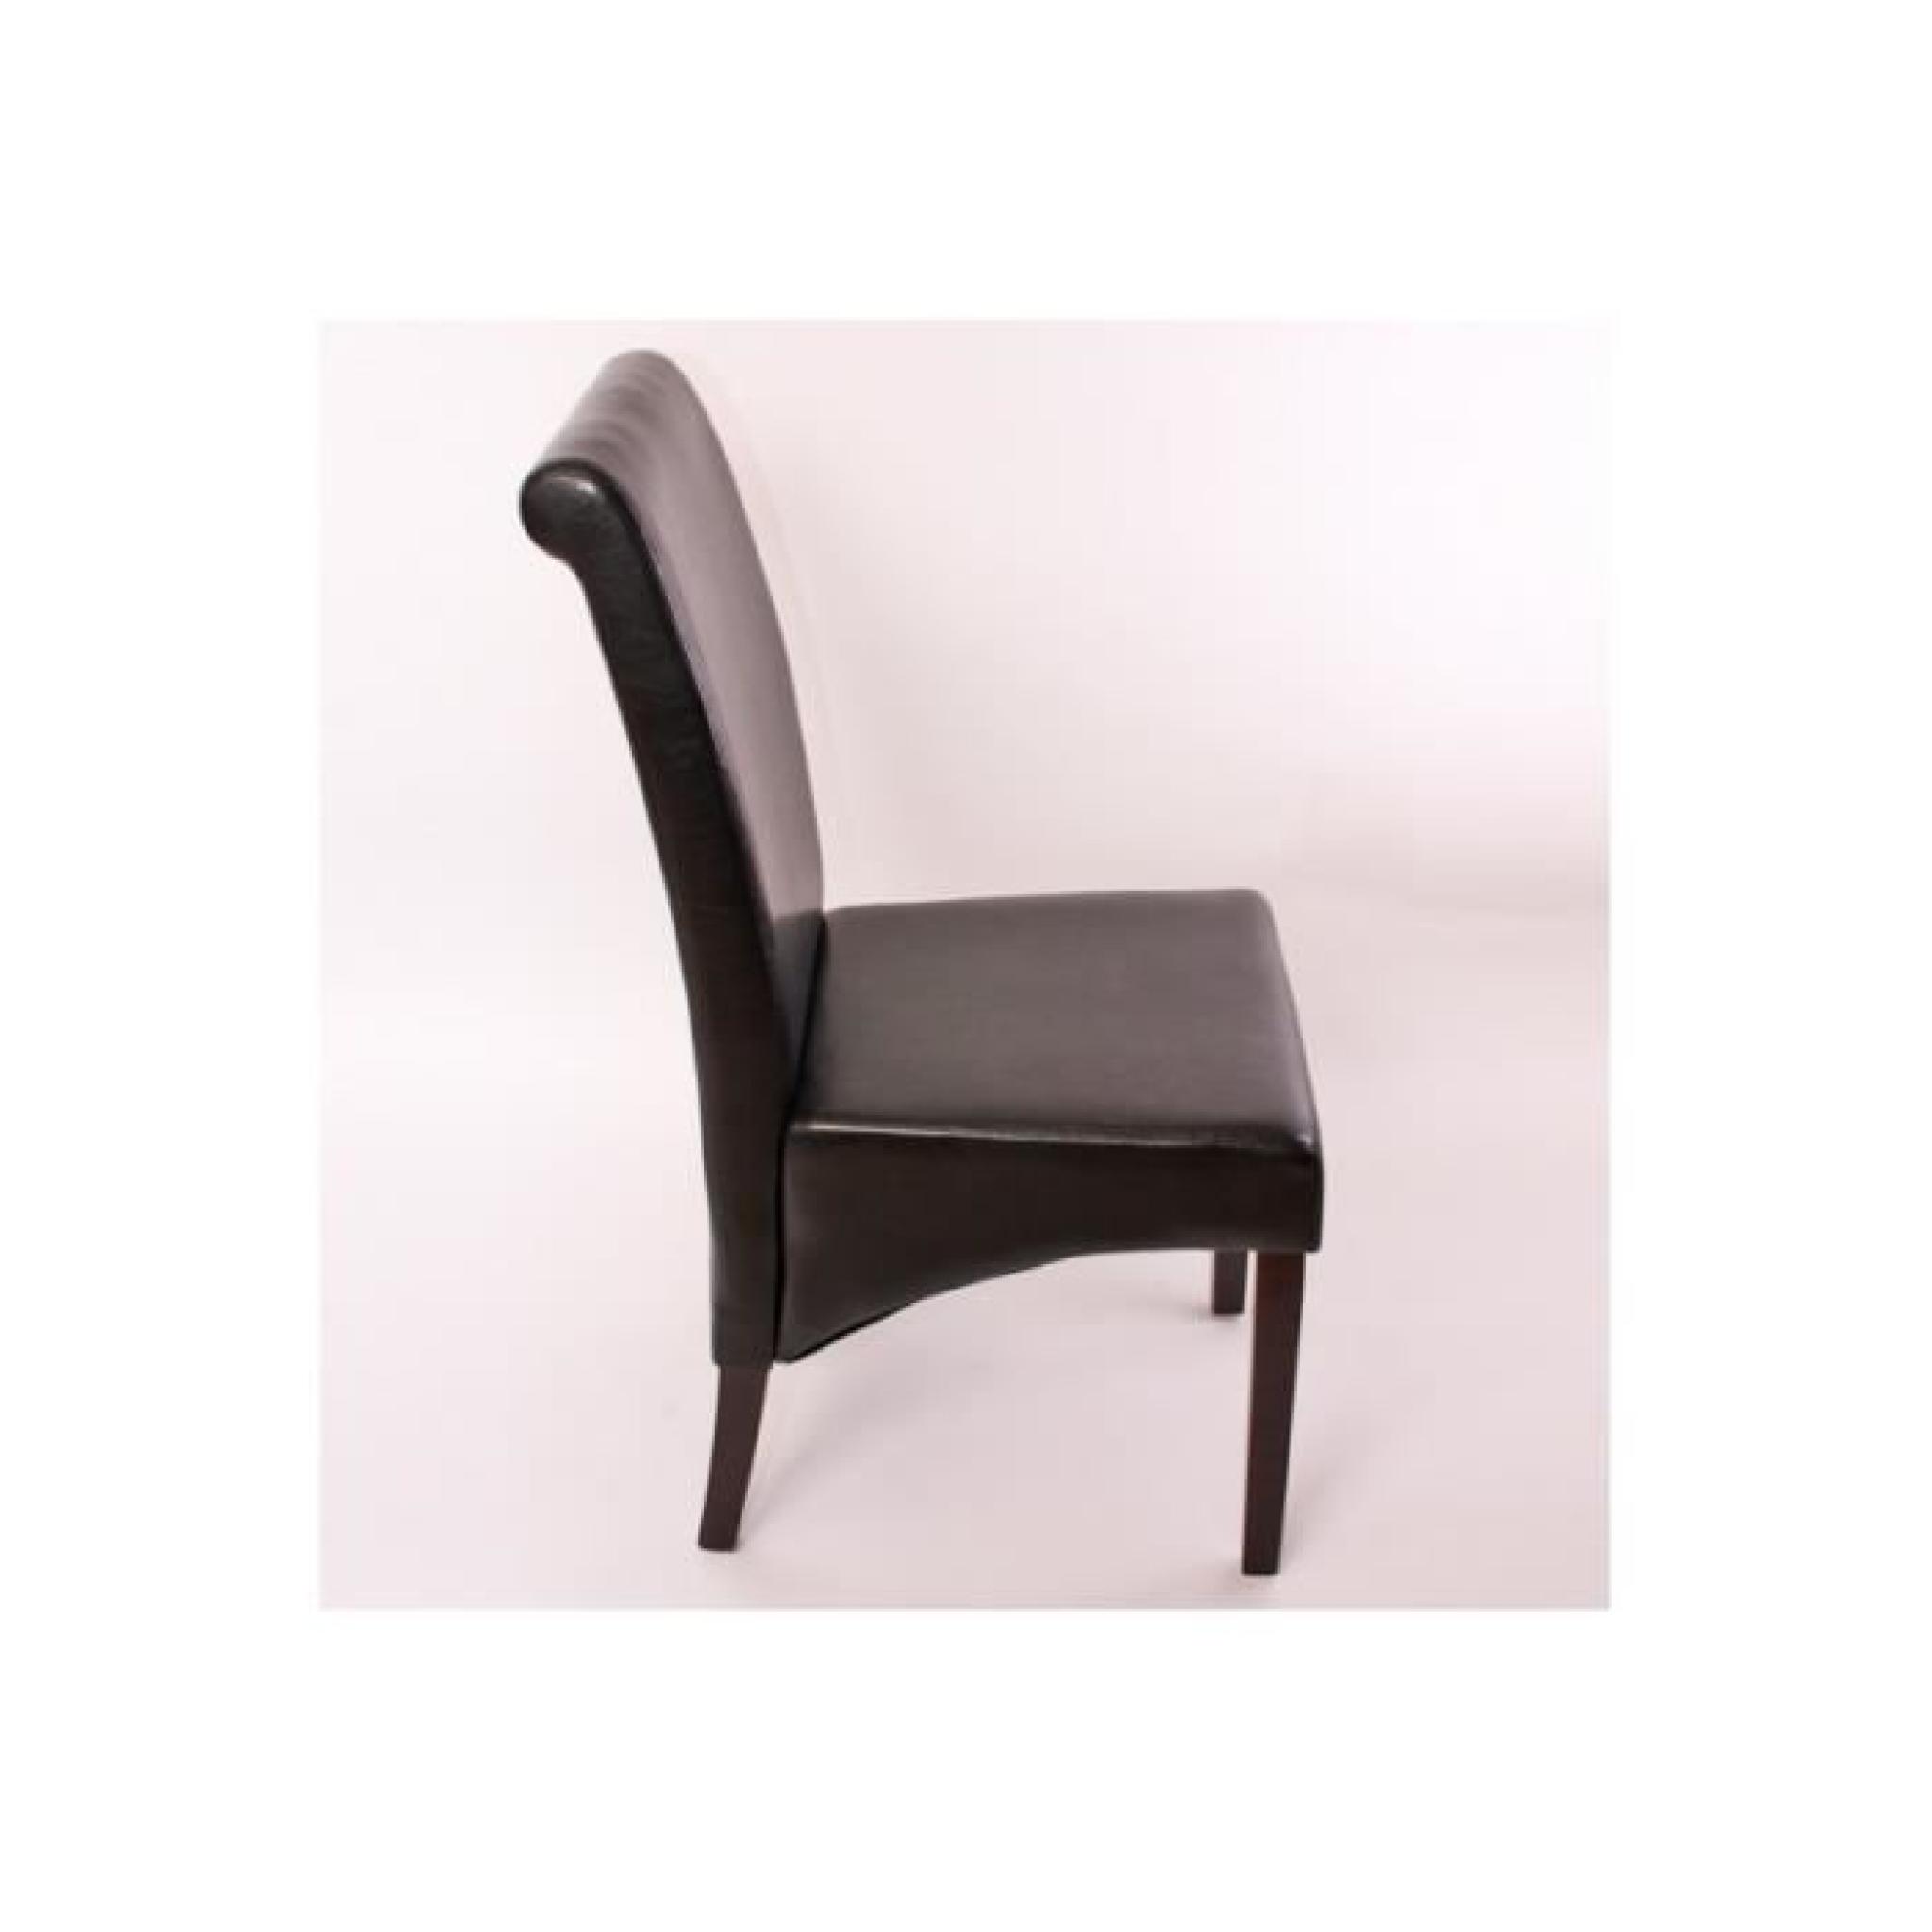 2x Salle Chaise inclinable en cuir M37 ~, noir, pieds noirs pas cher